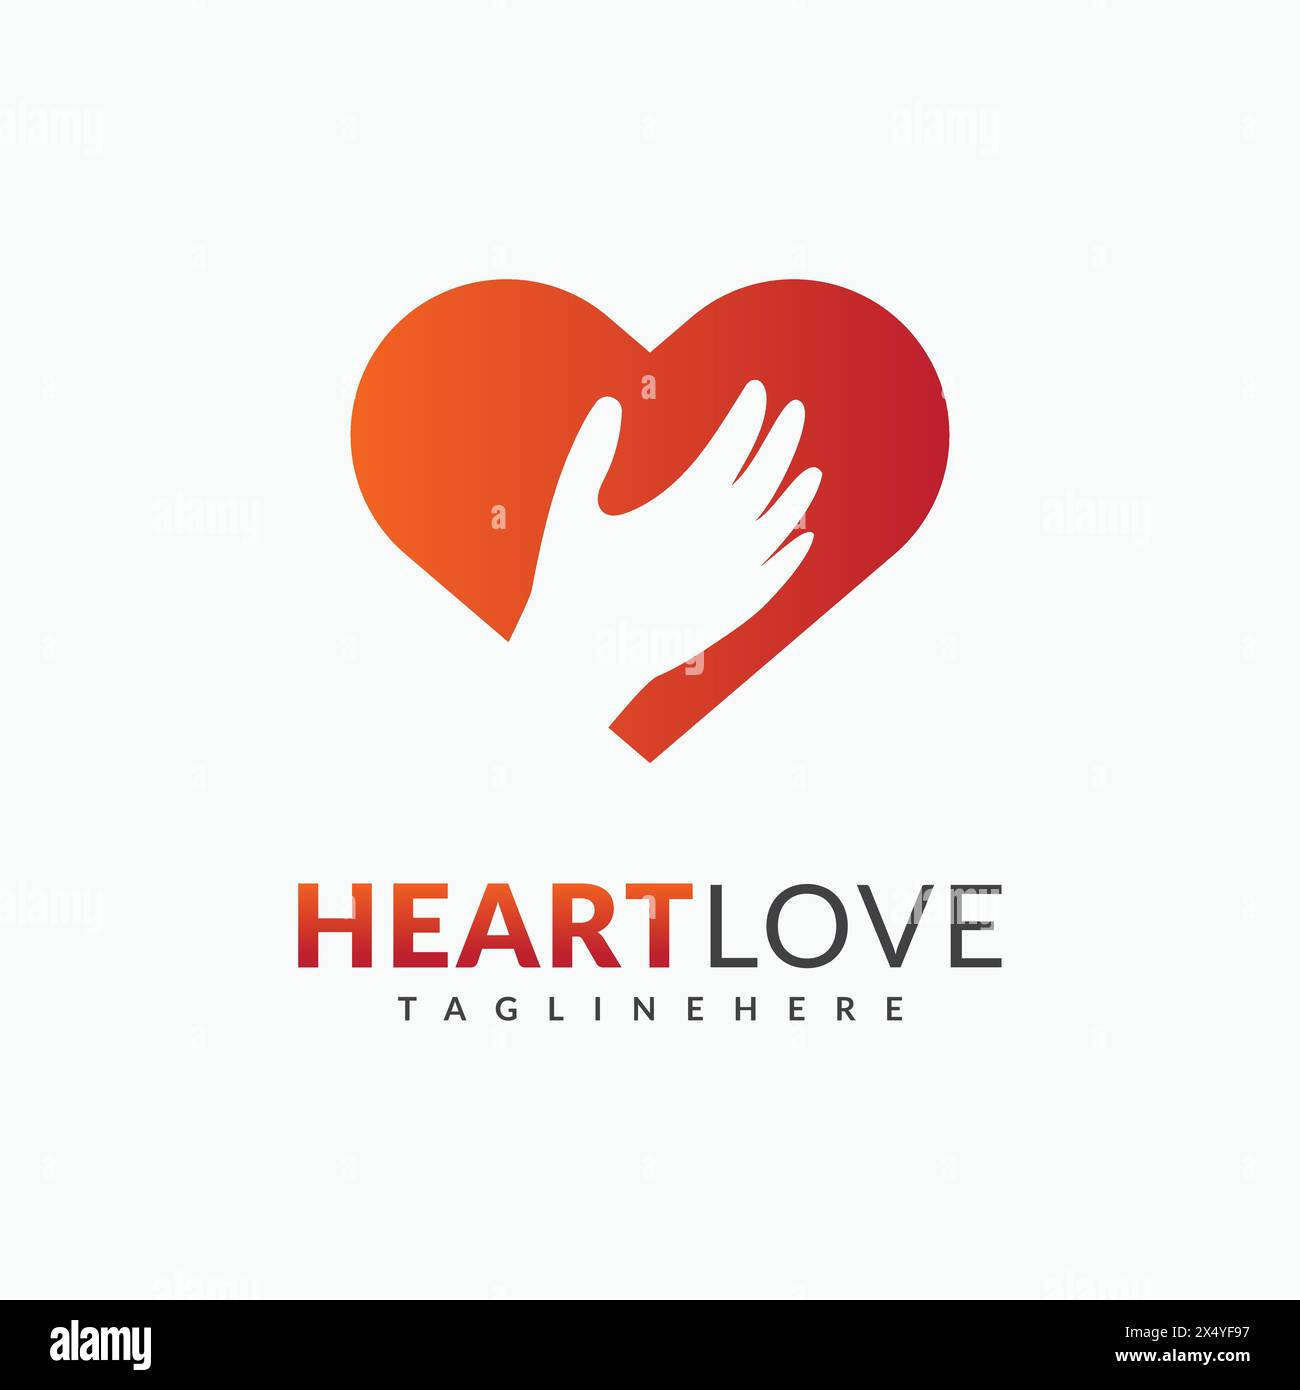 Logo d'une main serrant un coeur. Le cœur est rouge et orange. Coeur entouré d'un fond blanc Illustration de Vecteur